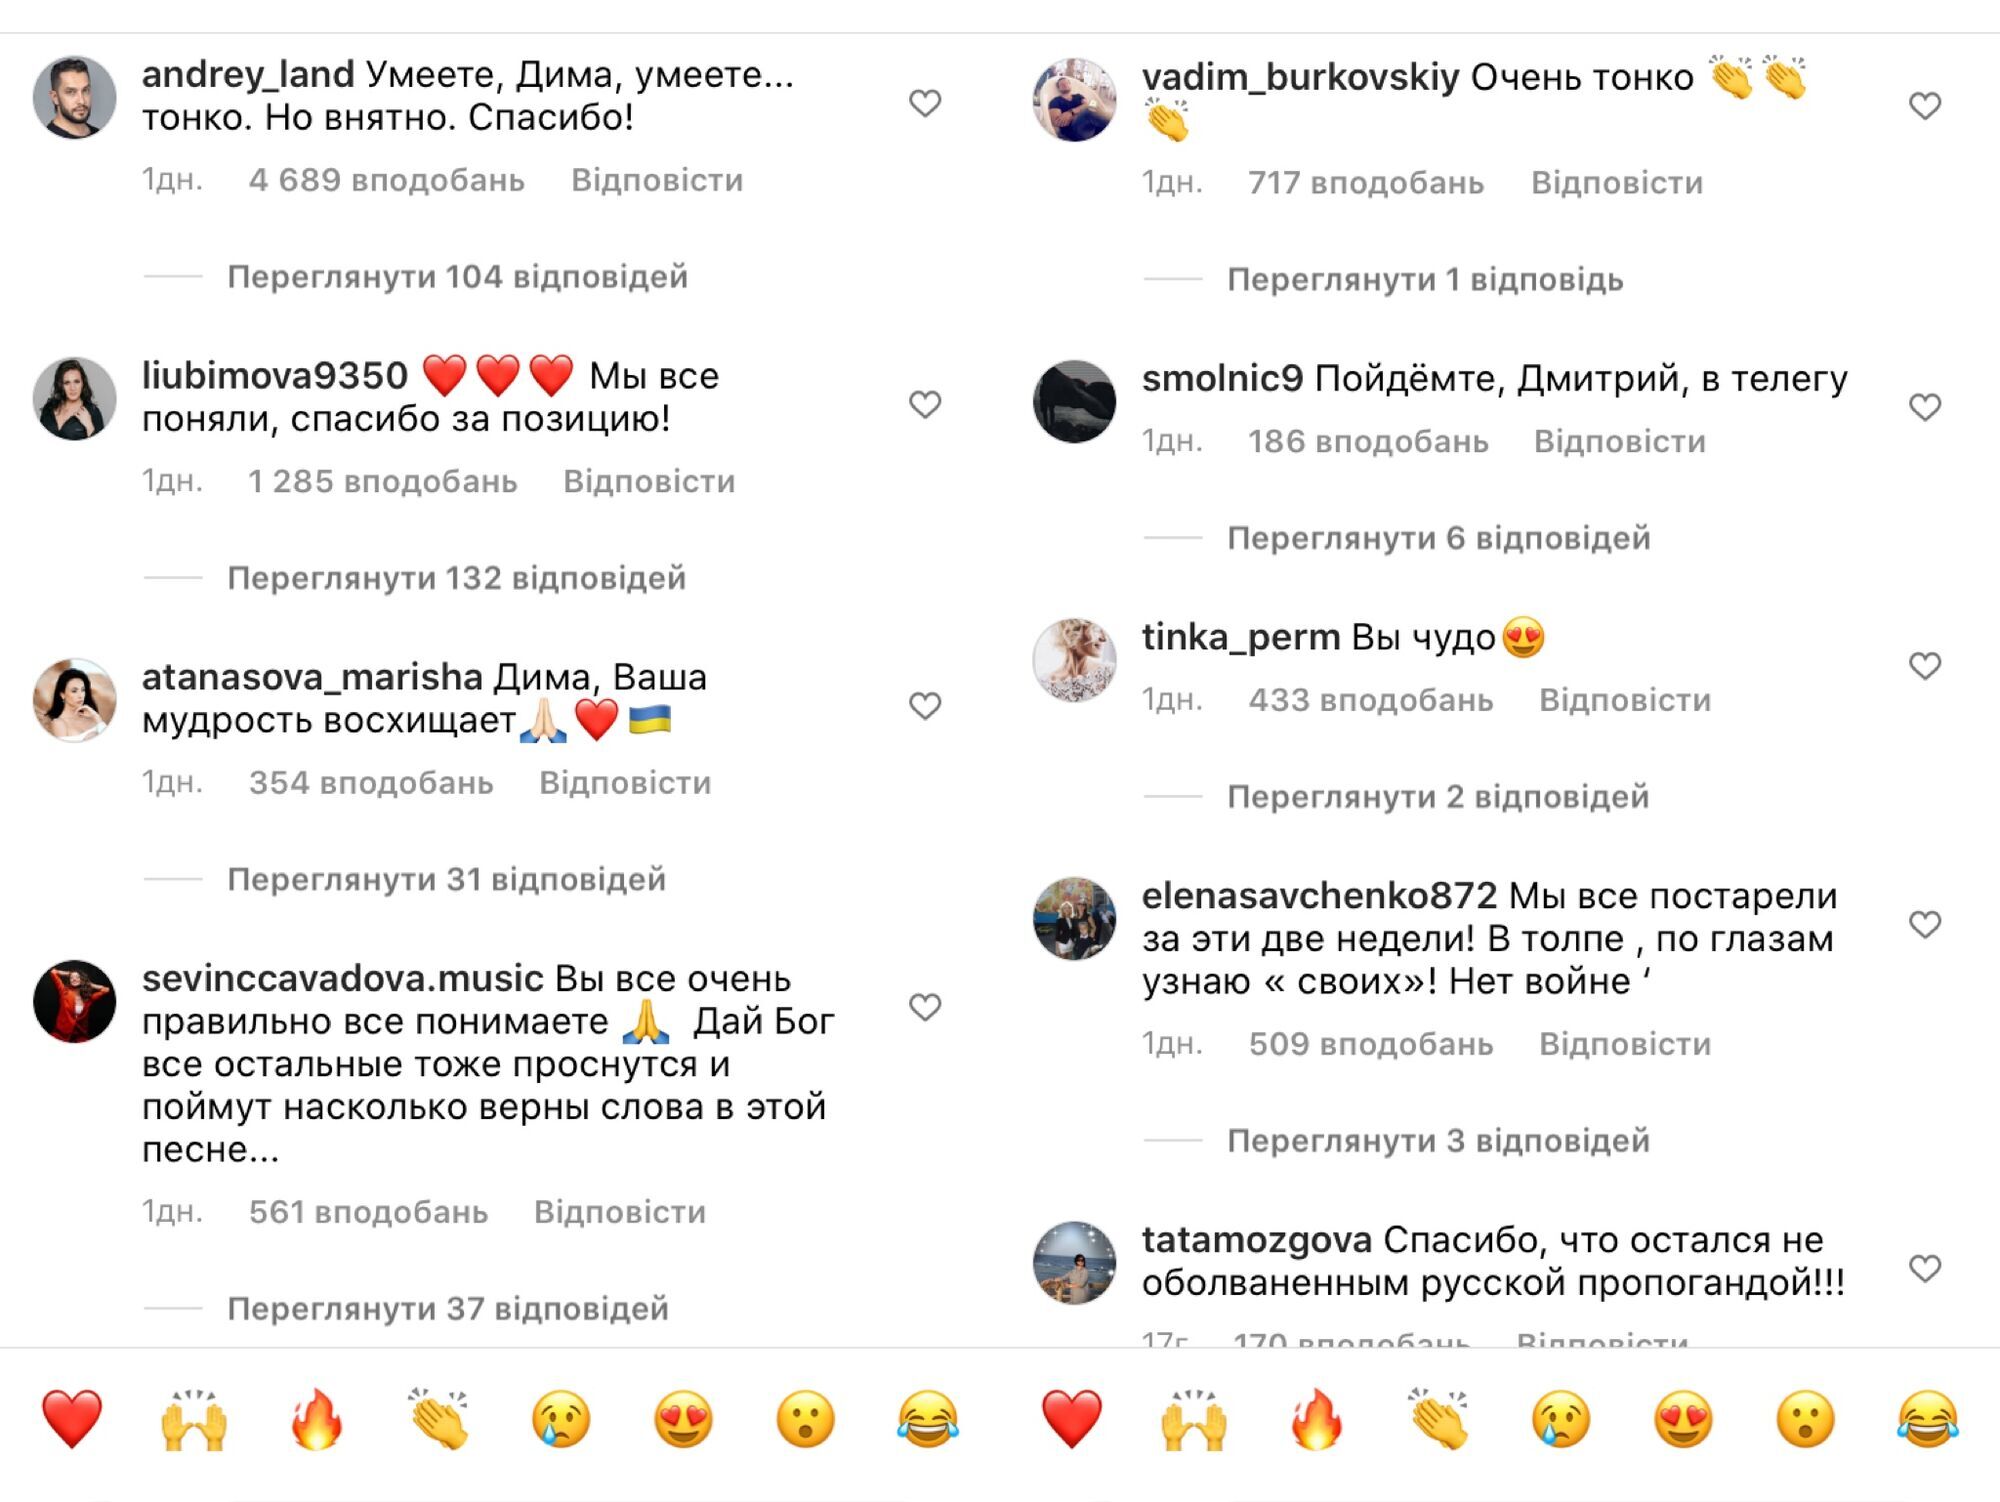 Коментарі під відео Дмитра Нагієва